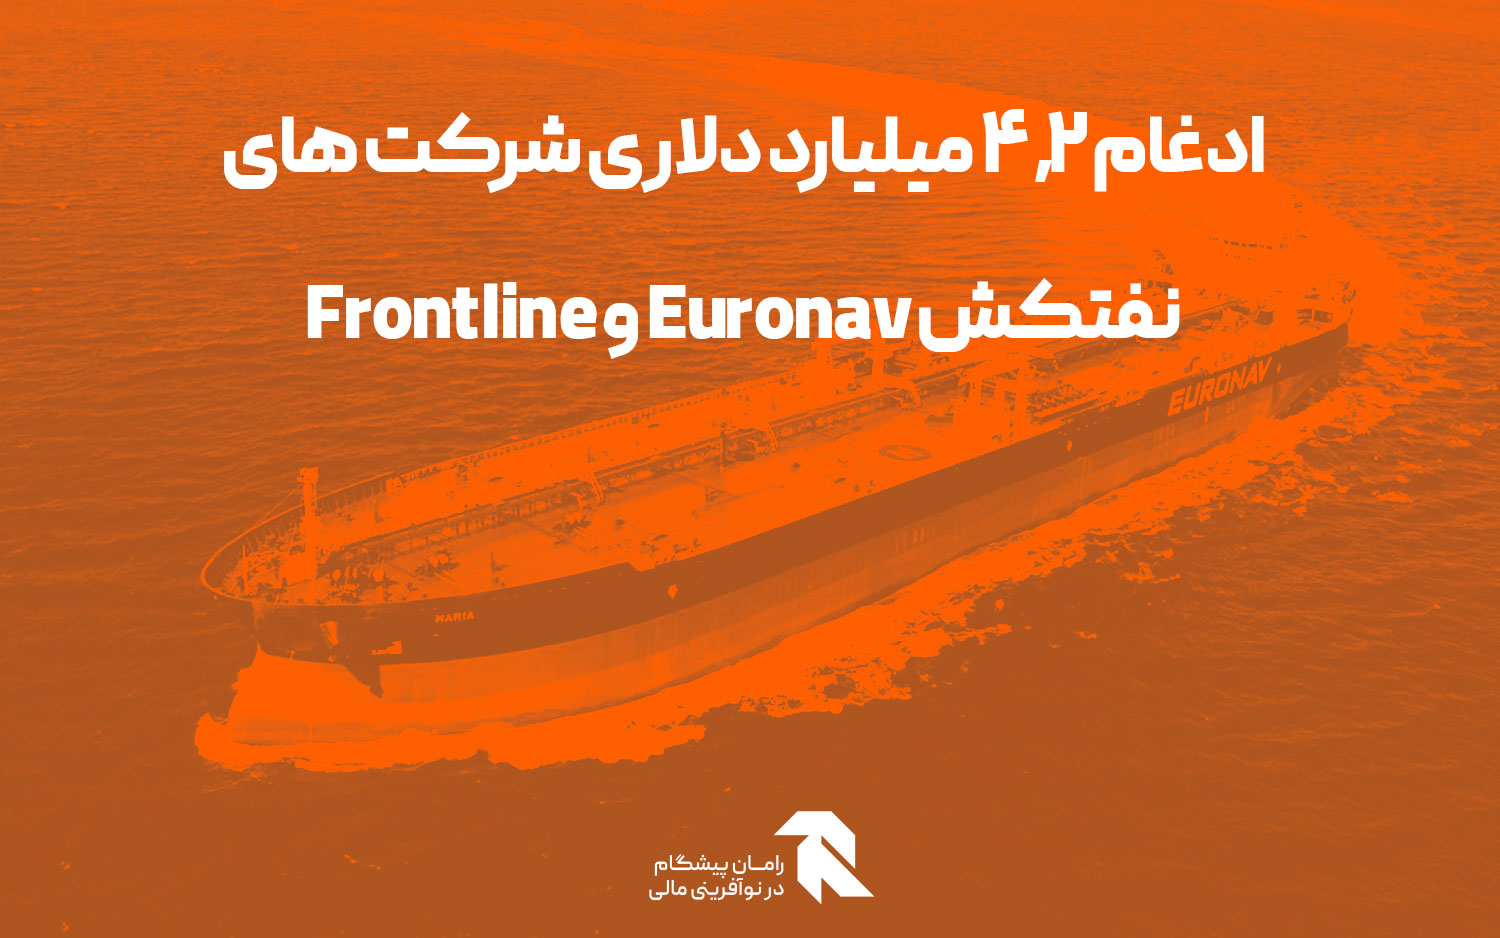 ادغام ۴.۲ میلیارد دلاری شرکت های نفتکش Euronav و Frontline